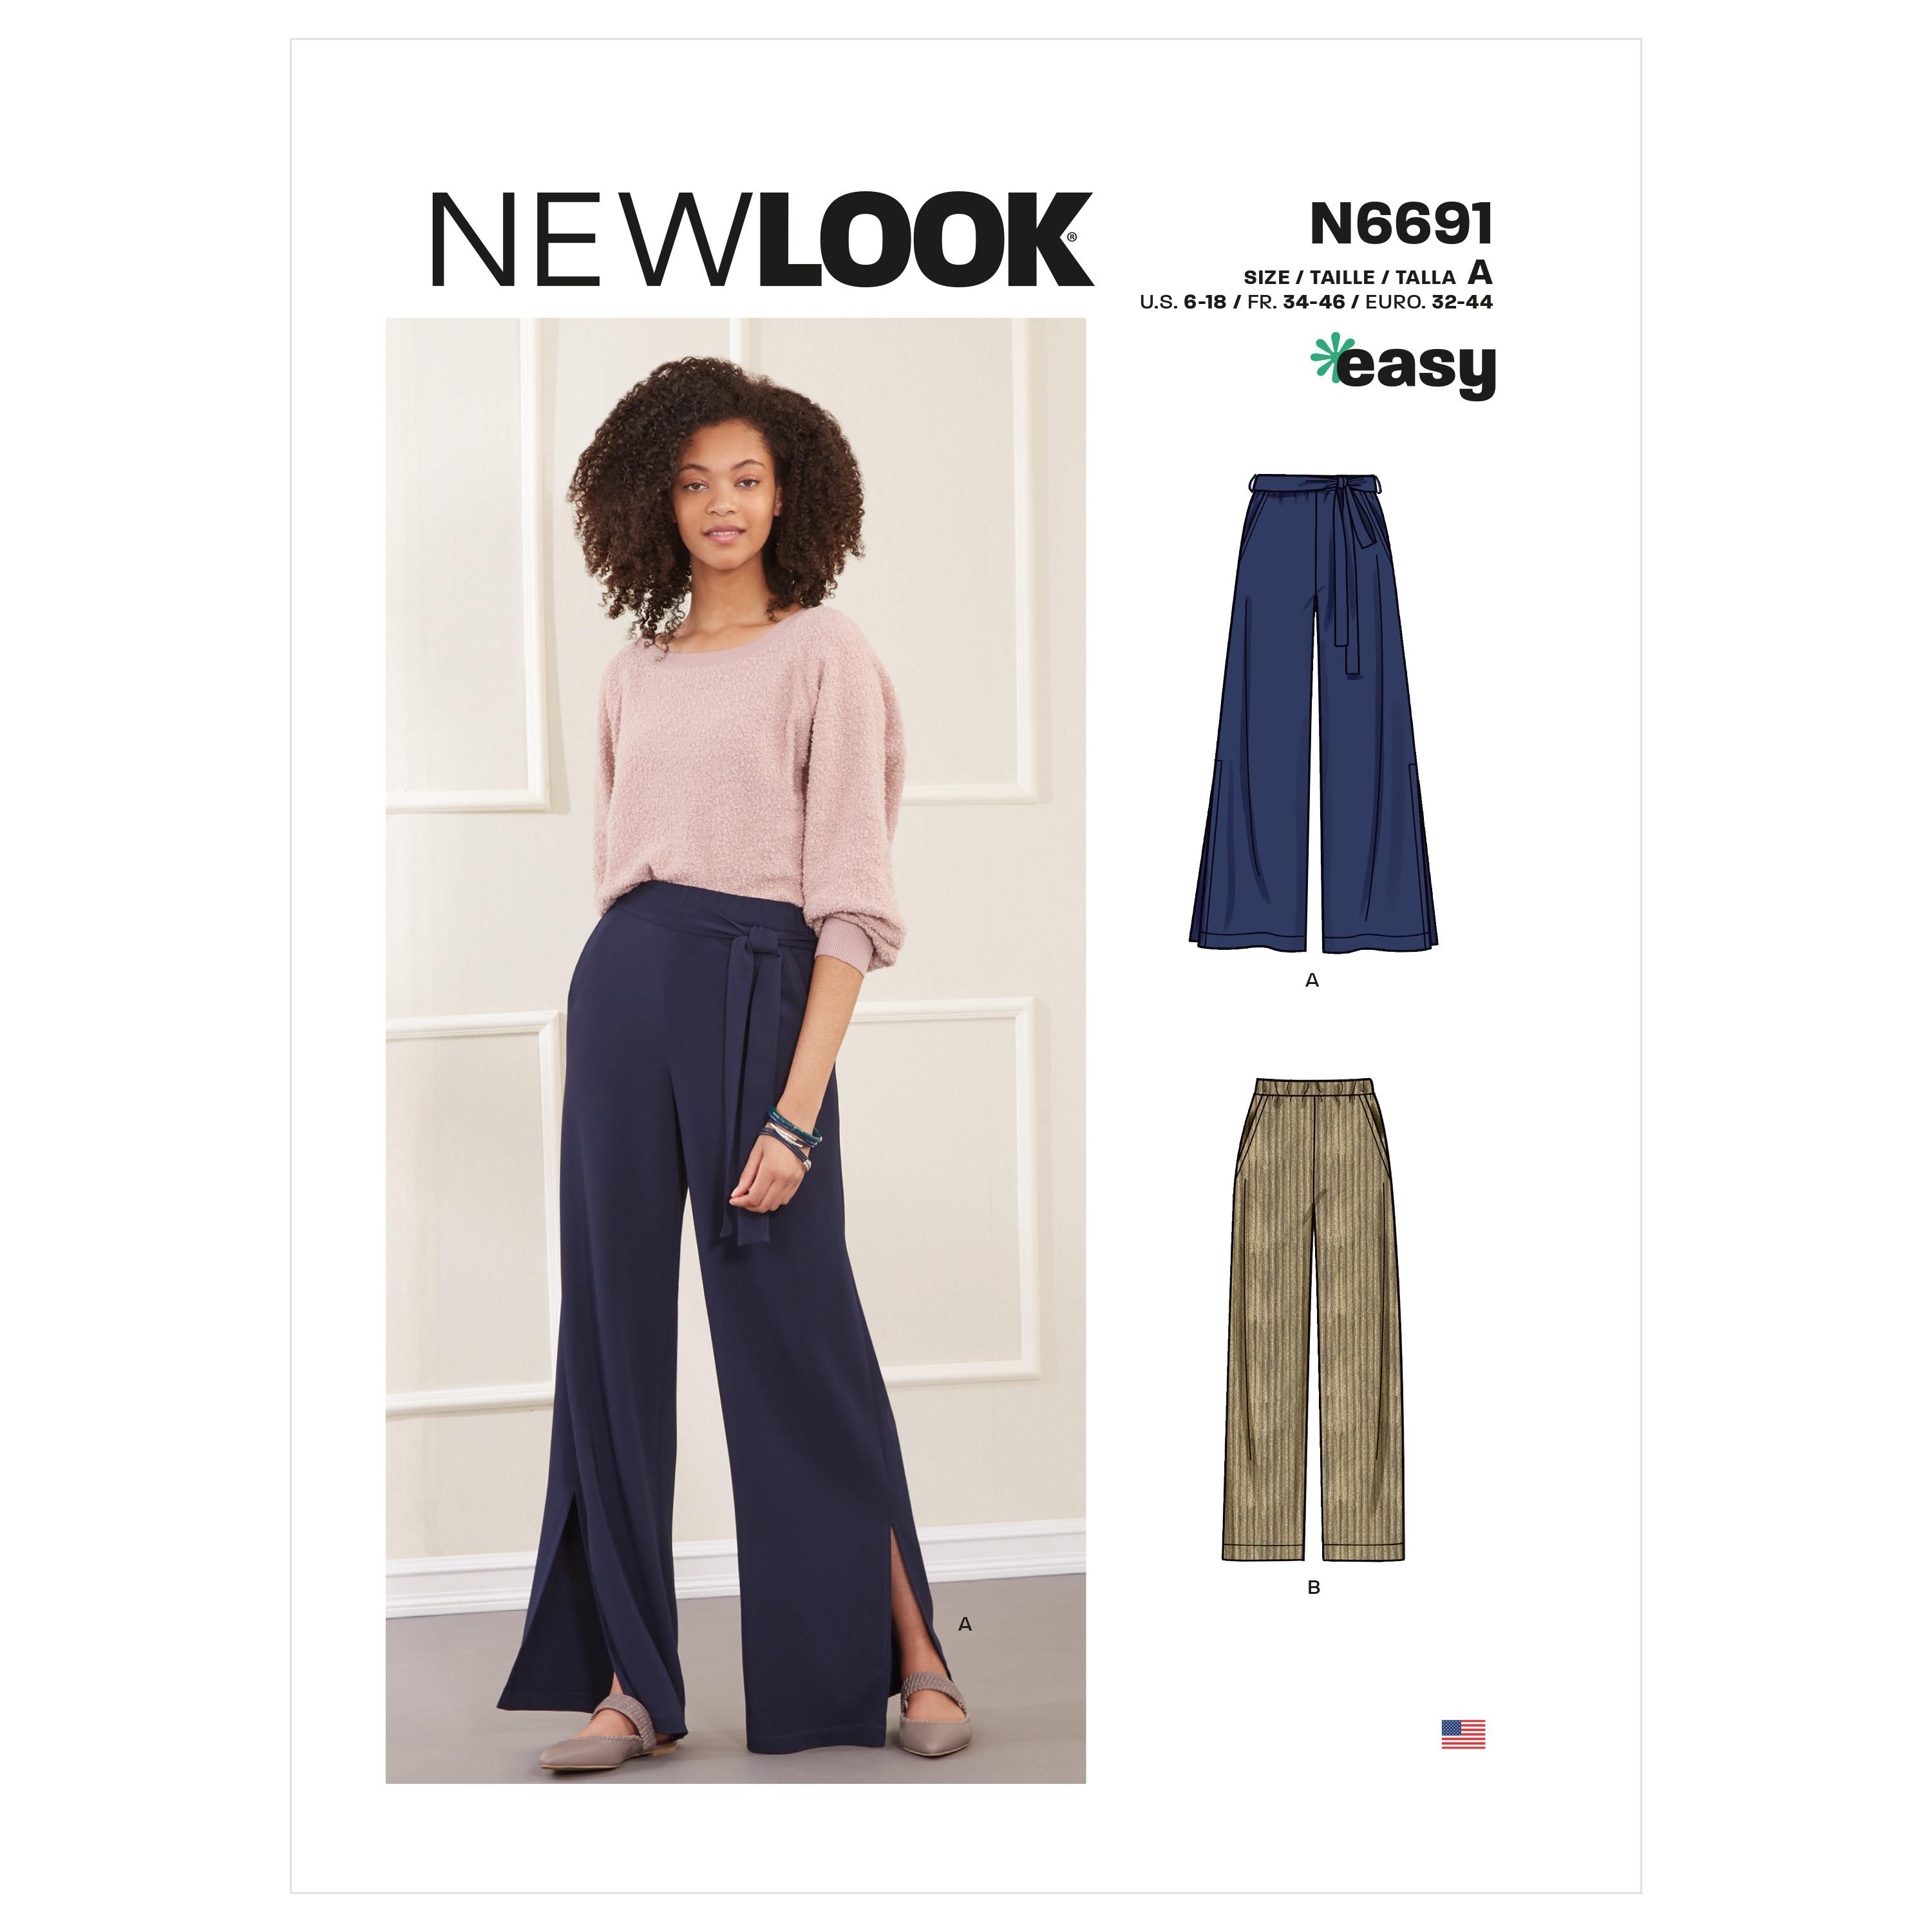 New Look Sewing Pattern N6691 Misses' Slim Or Flared Pants